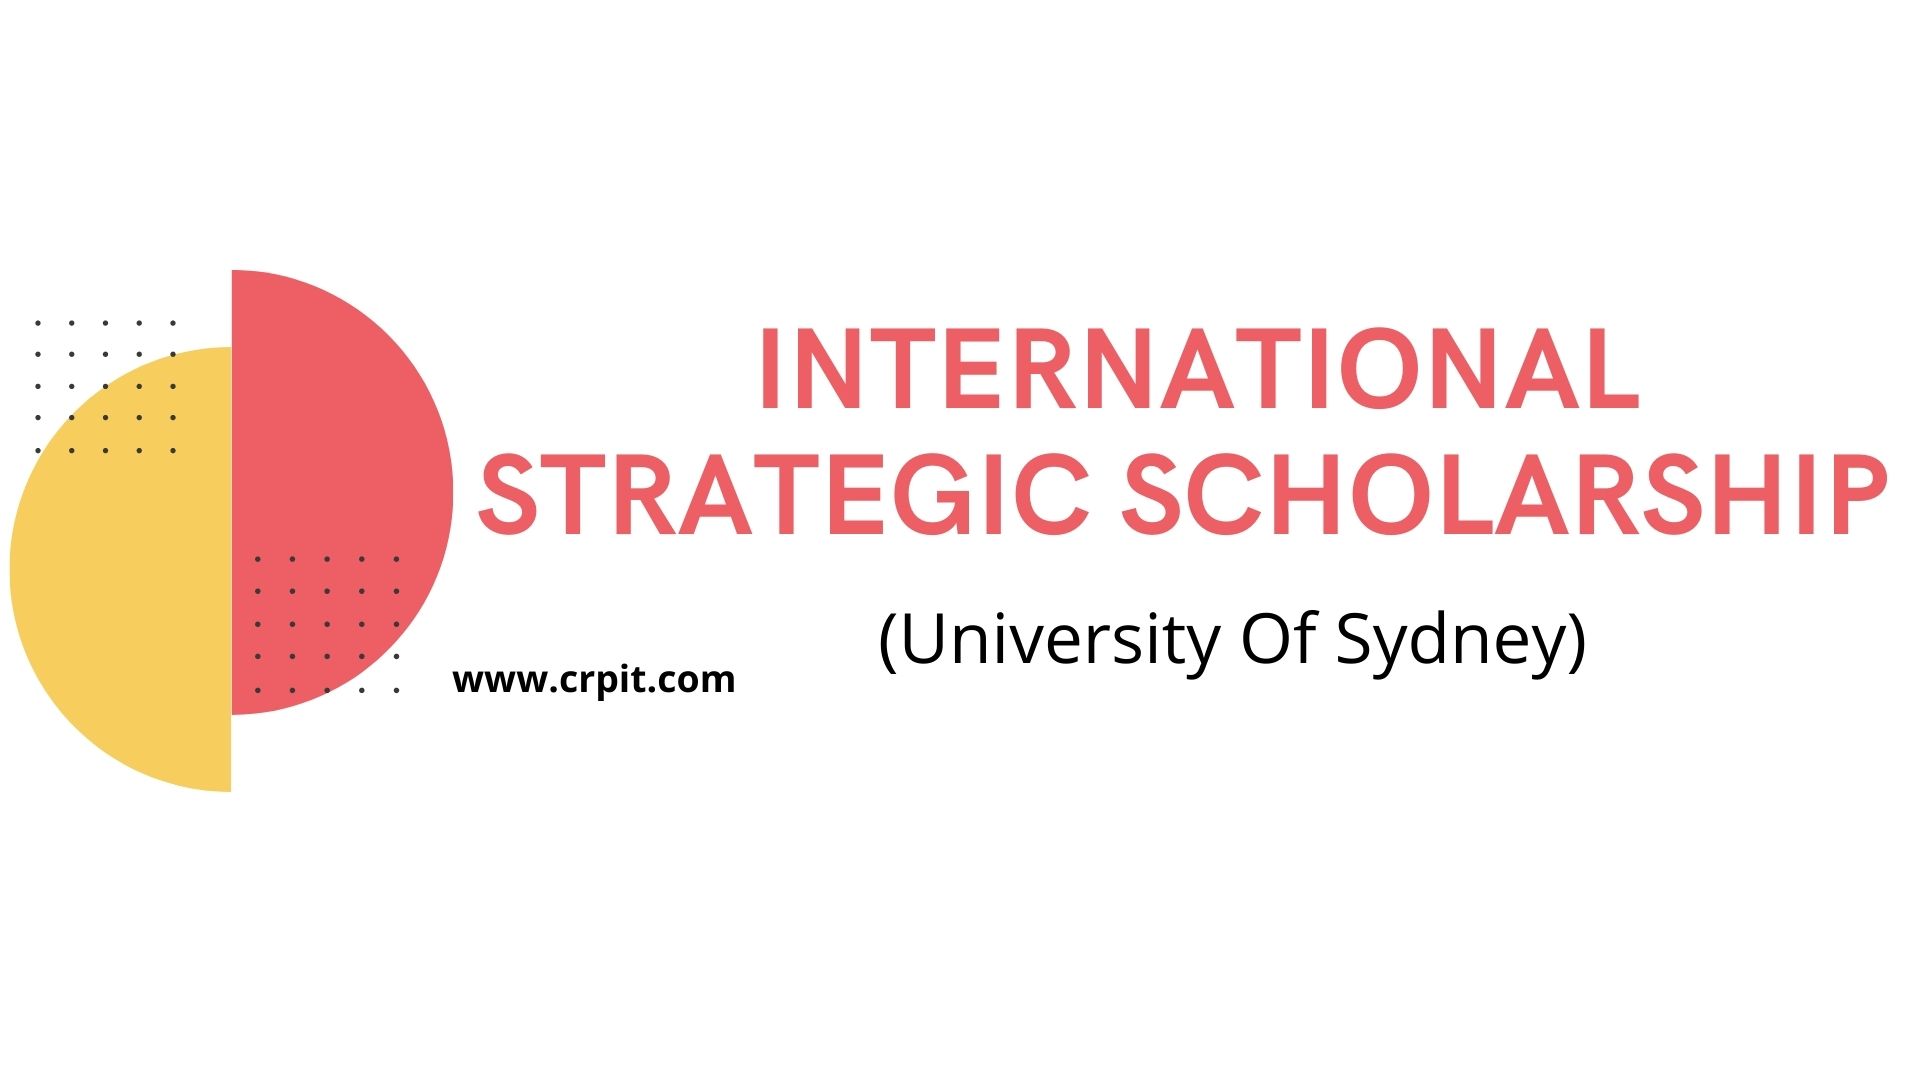 University of Sydney International Strategic Scholarship – How to Apply Online?